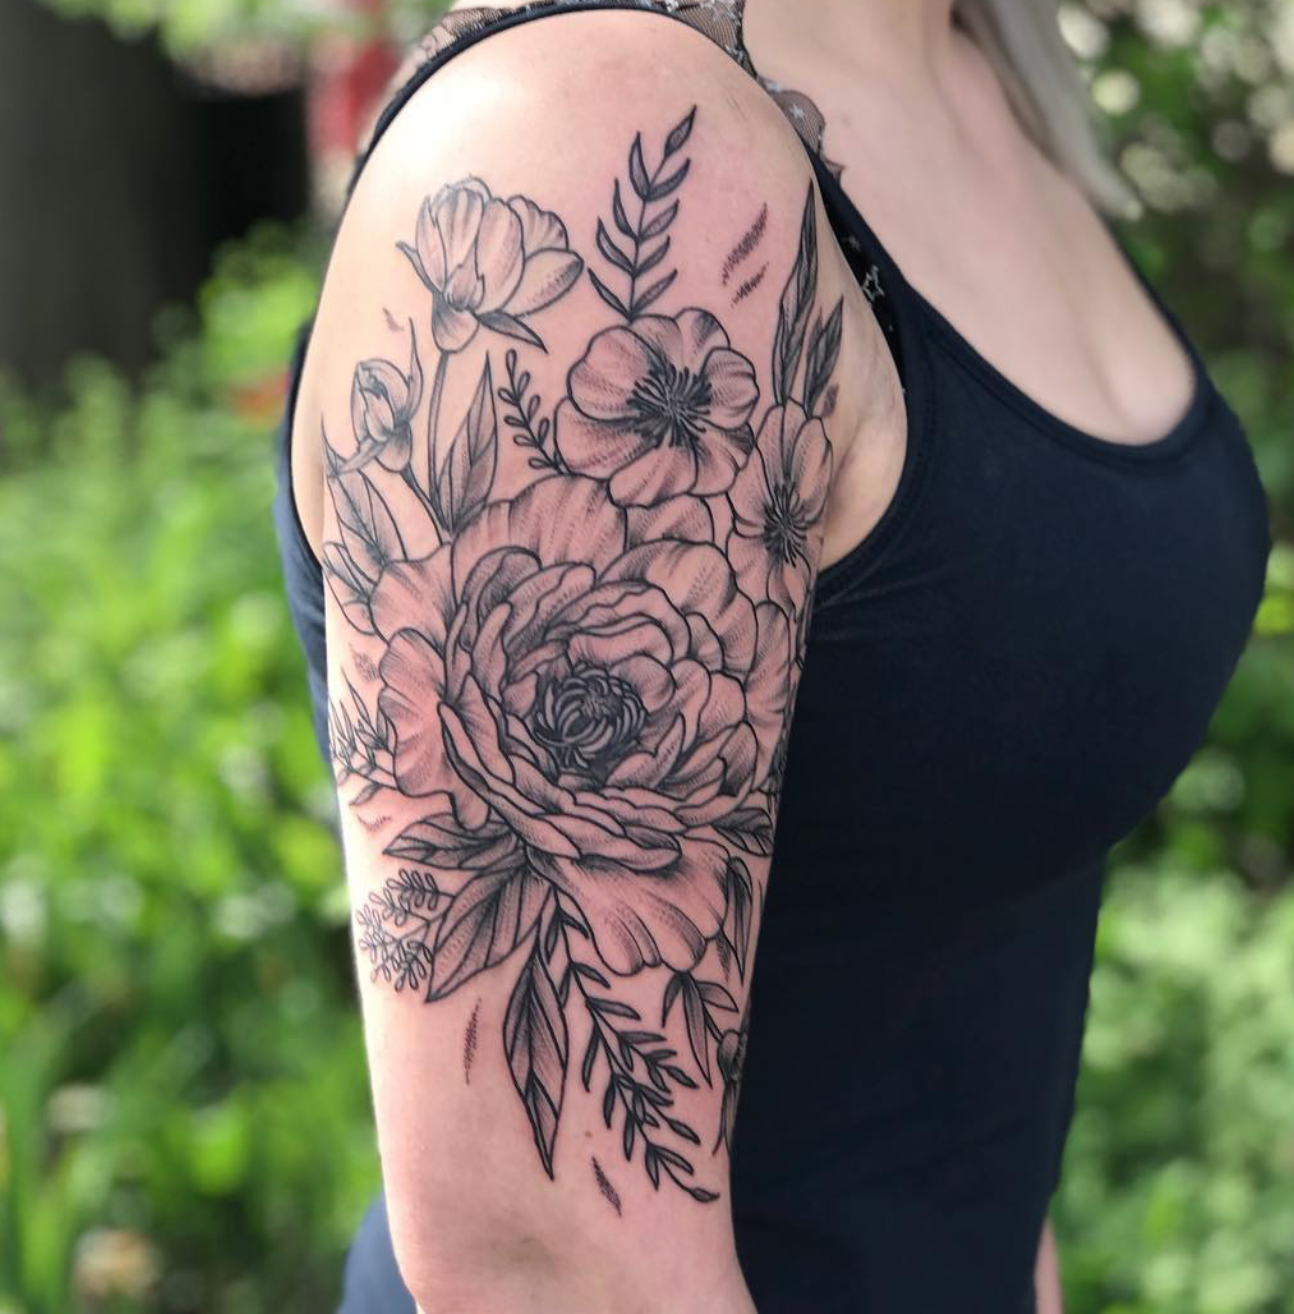 Black and gray floral tattoo by Tara Morgan